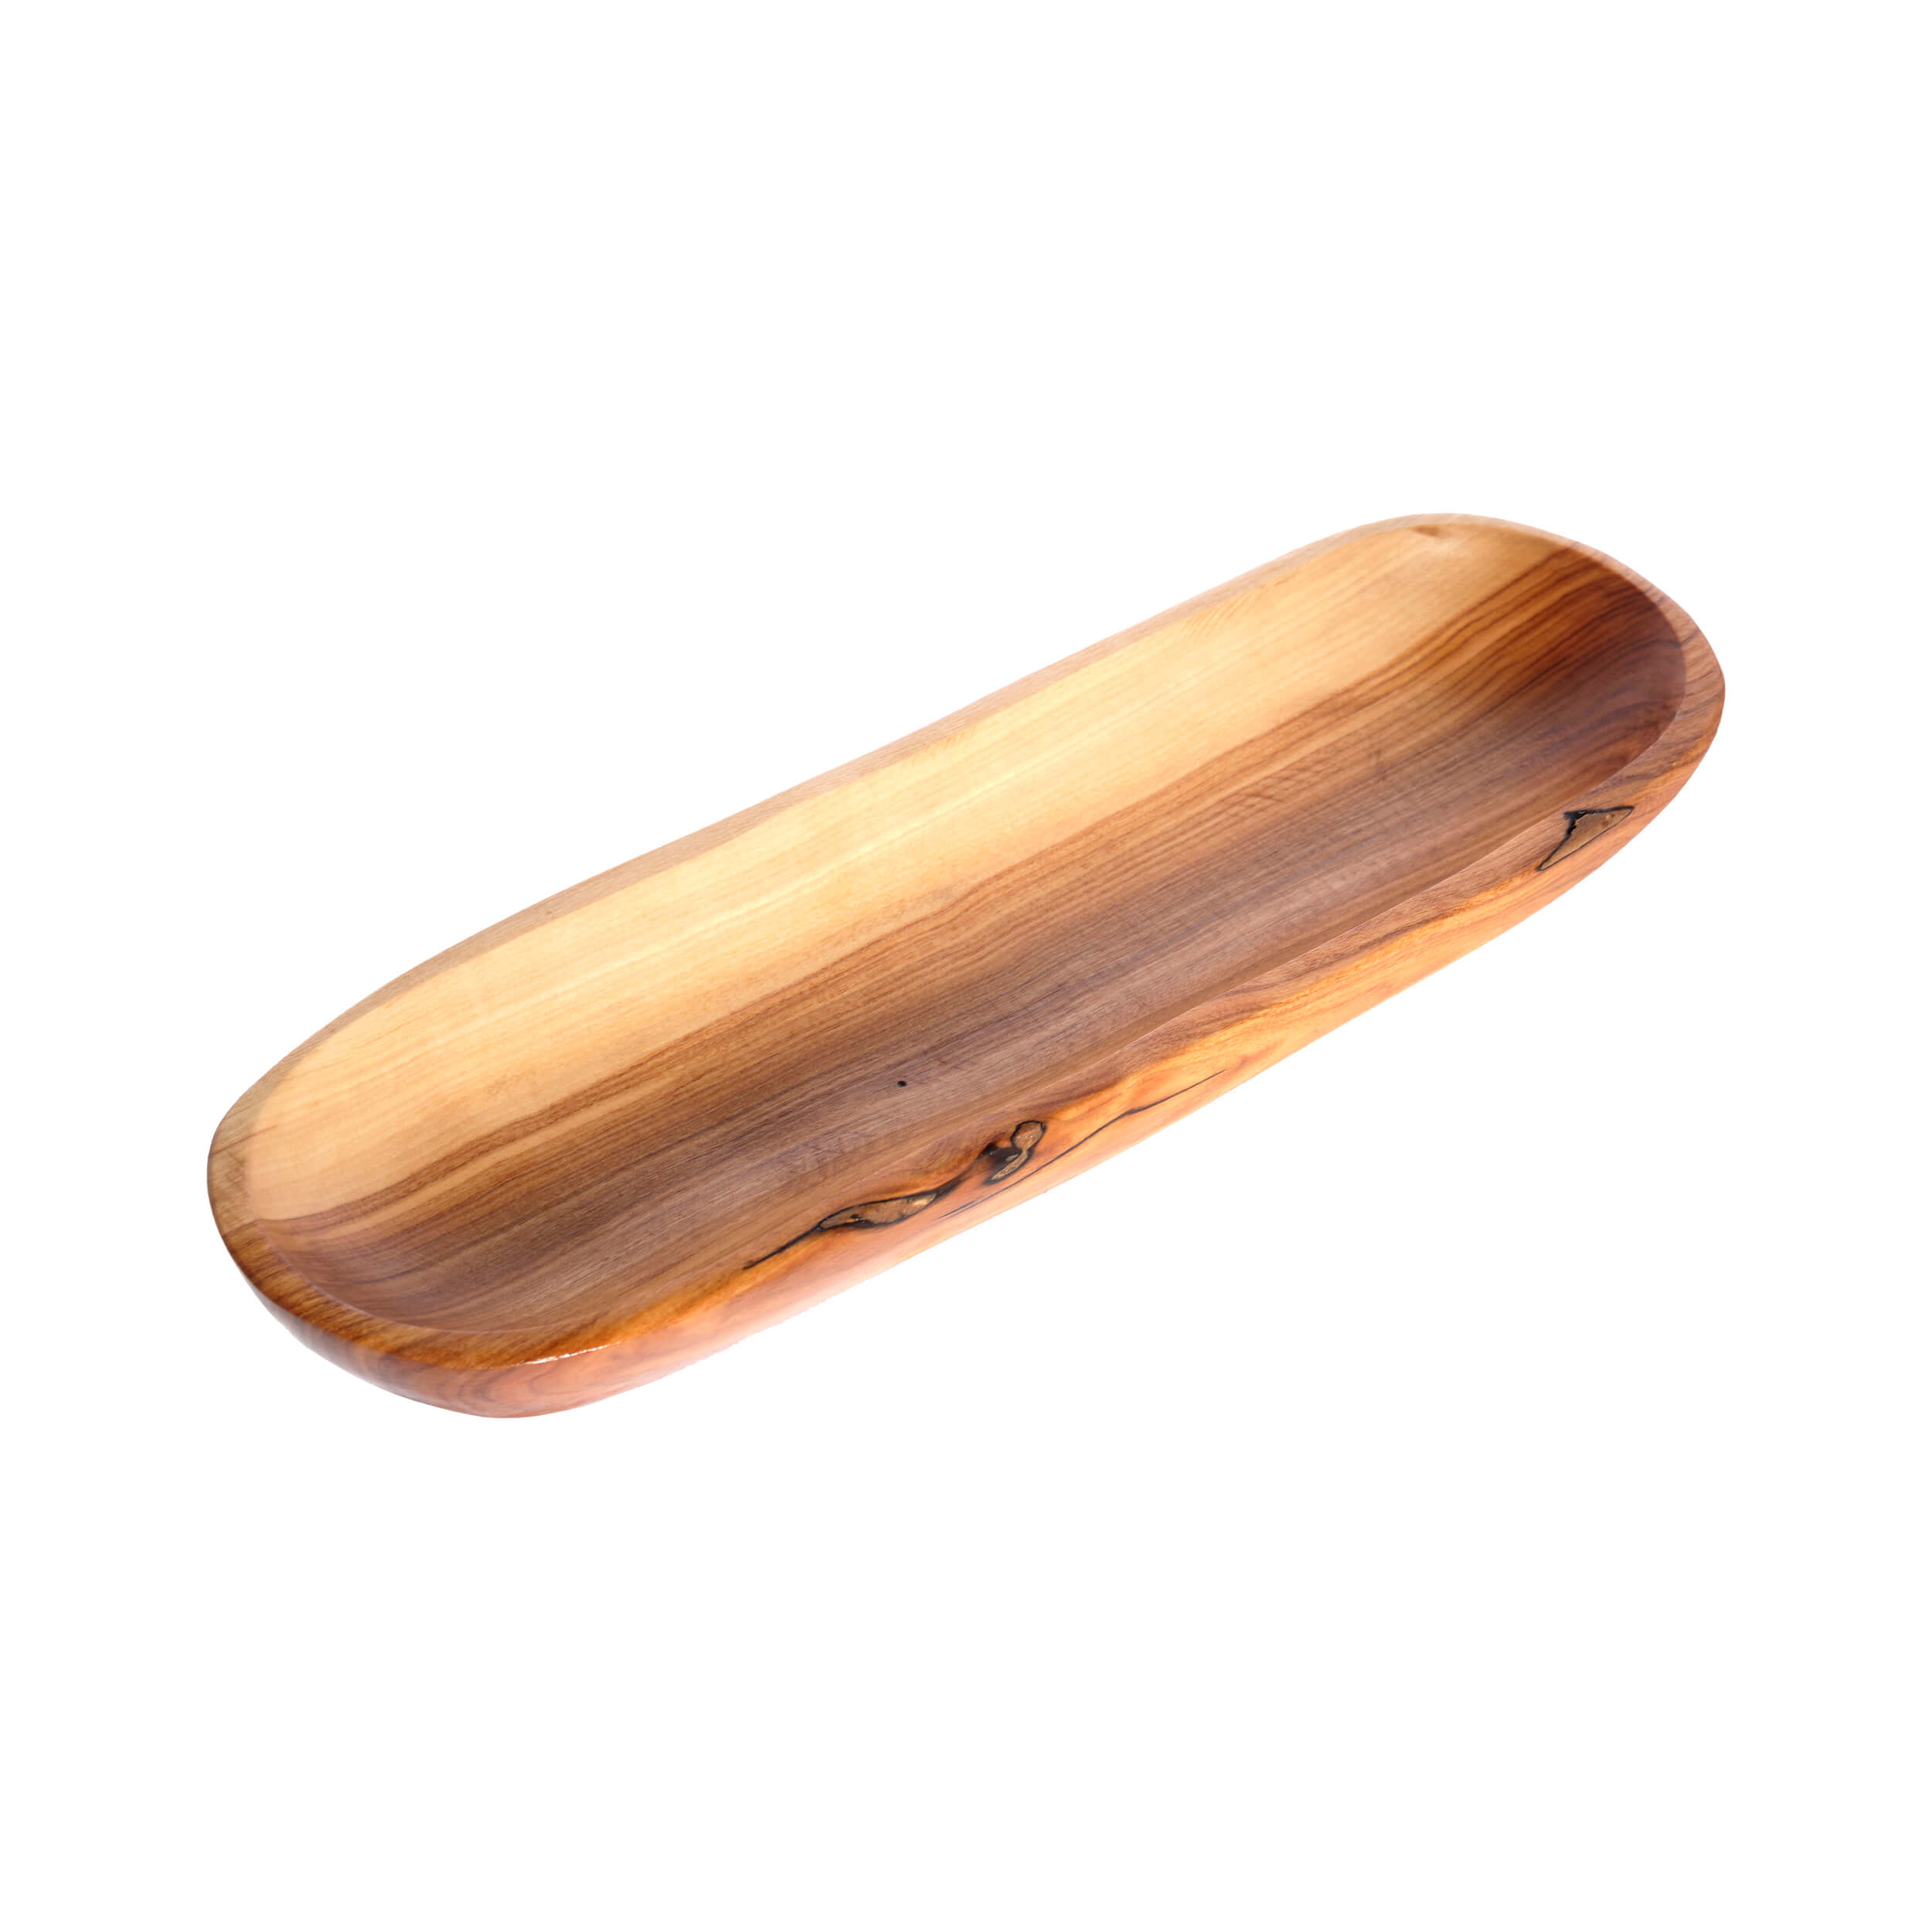 Γαβαθάκι Μακρόστενο 'Mavridis Wooden Products' 300gr